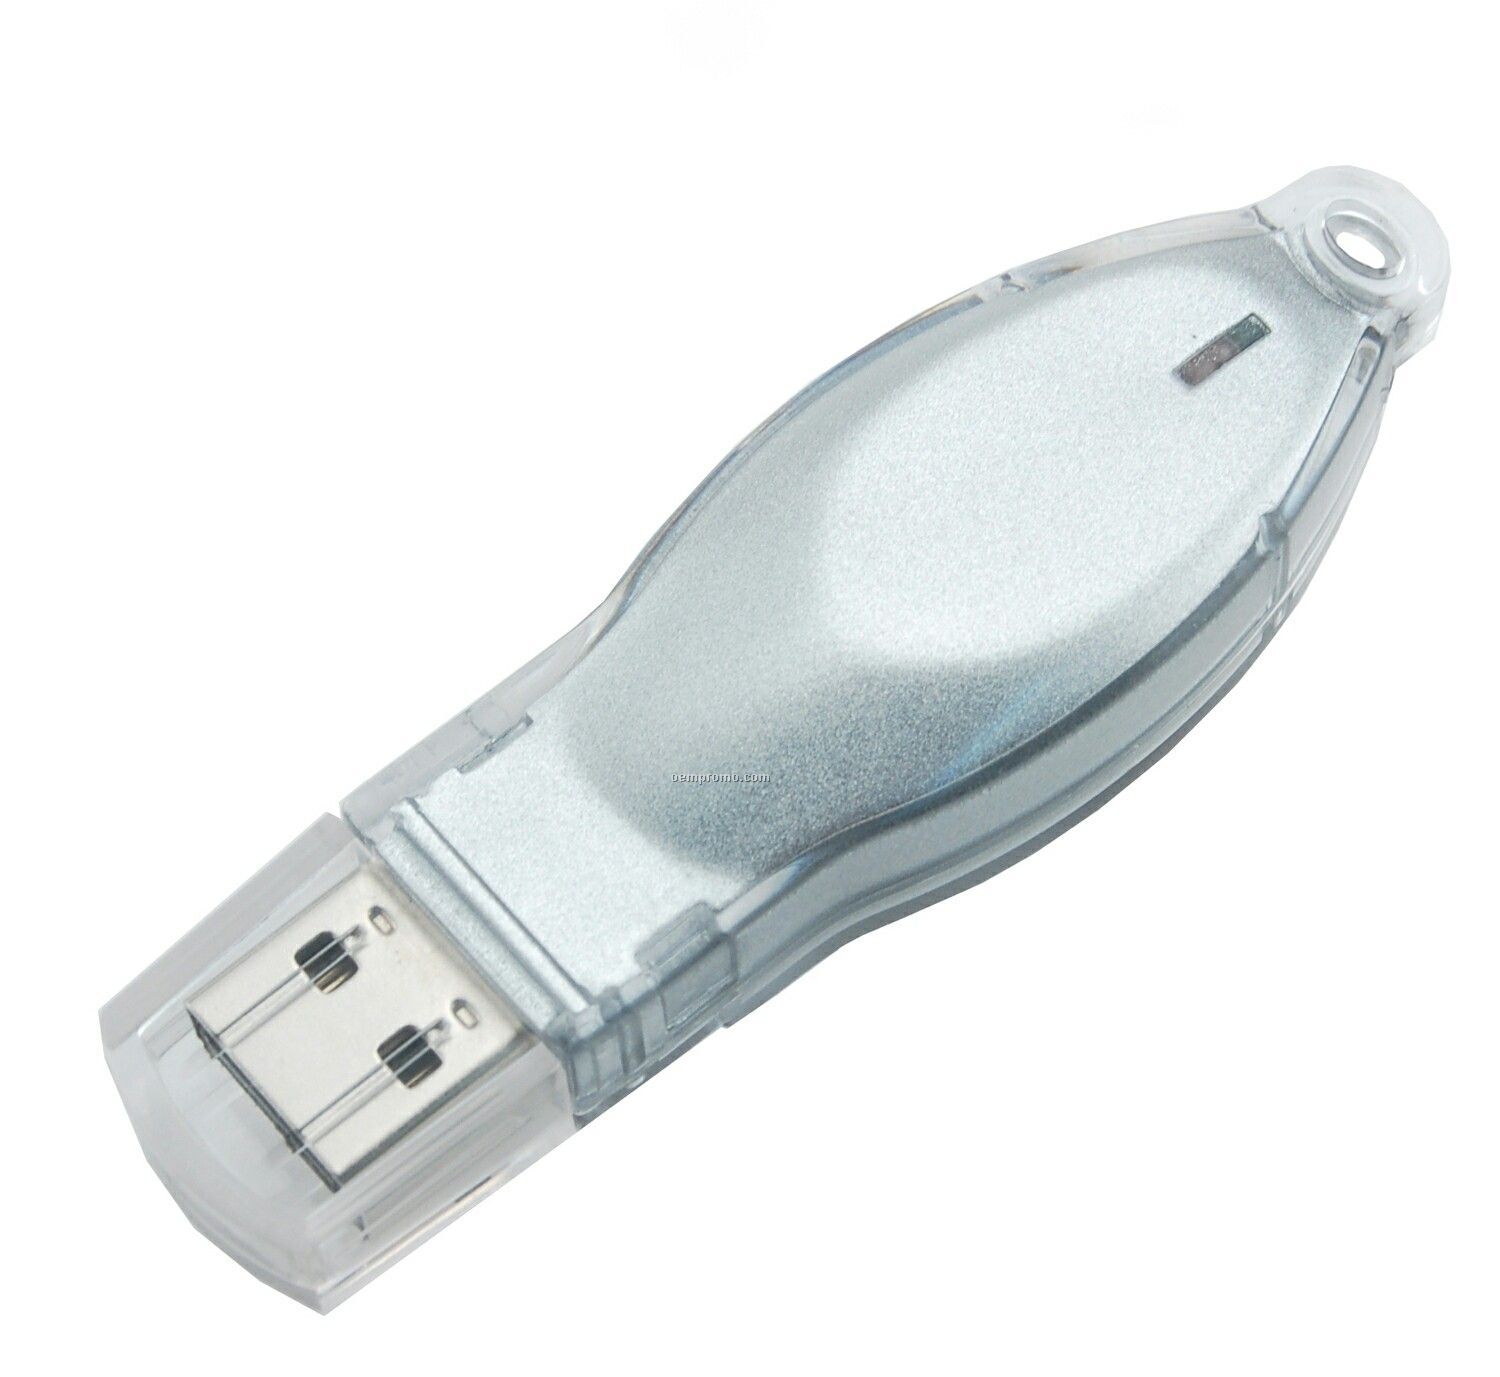 8 Gb Mosaic 200 Series USB Drive